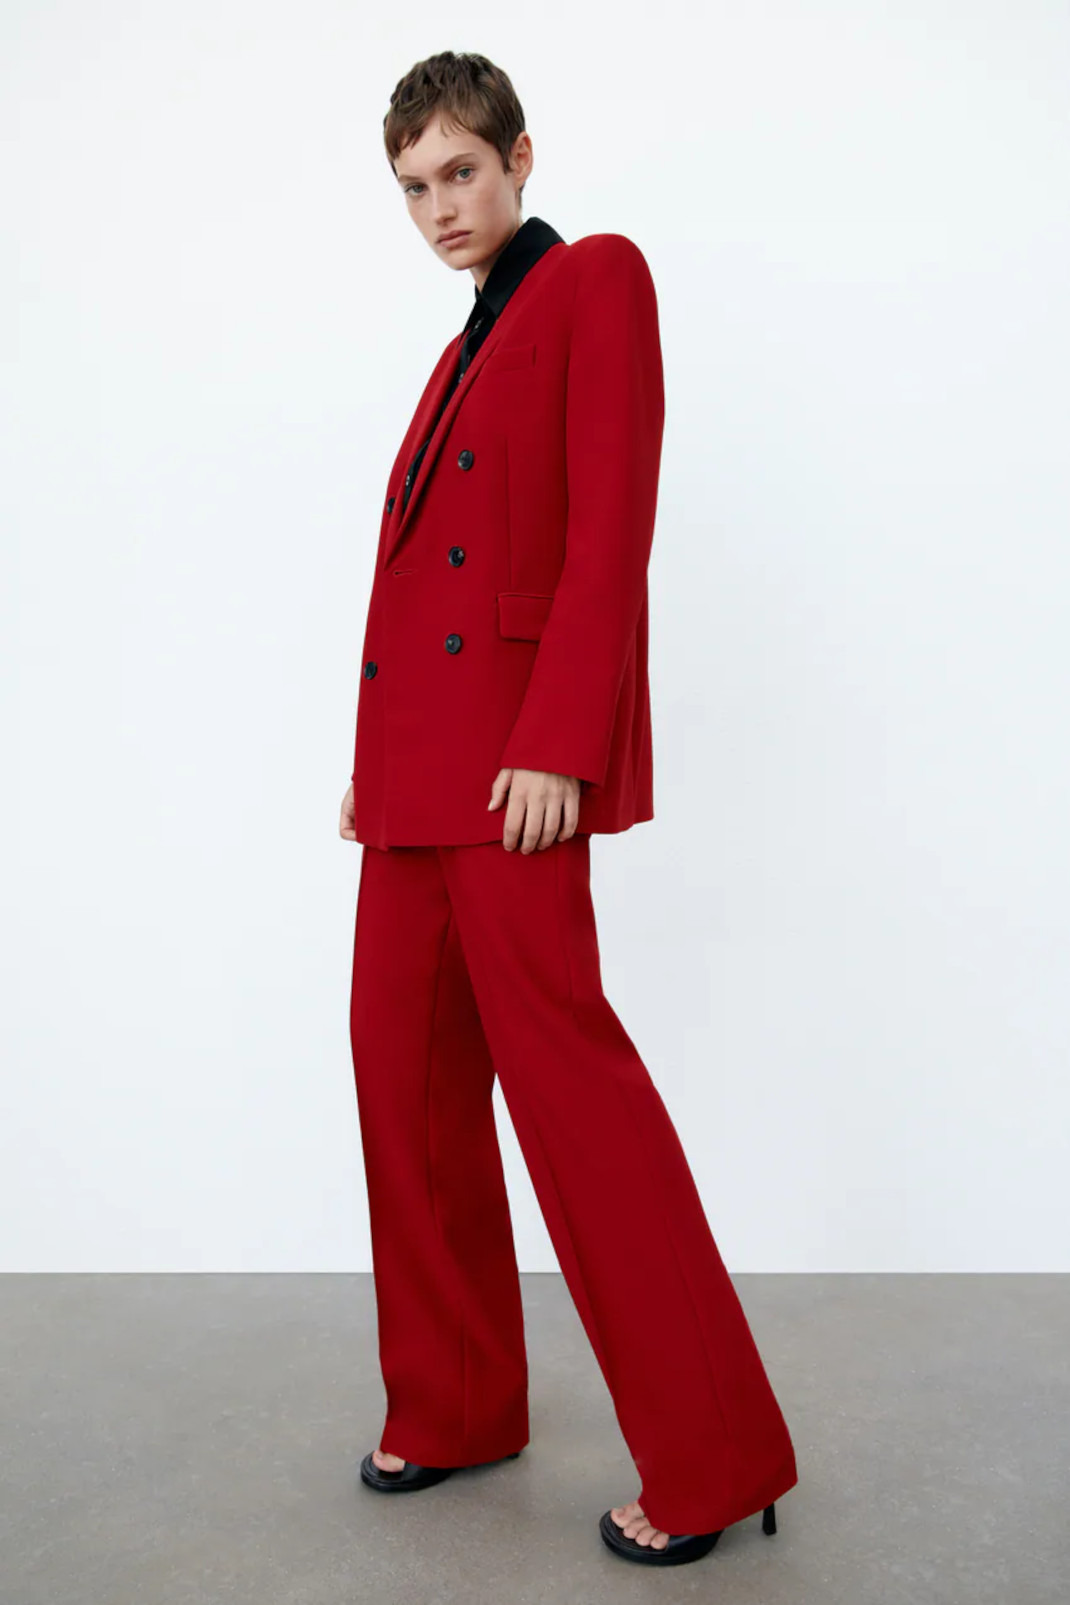 Η Ναταλία Γερμανού με Zara κόκκινο κοστούμι